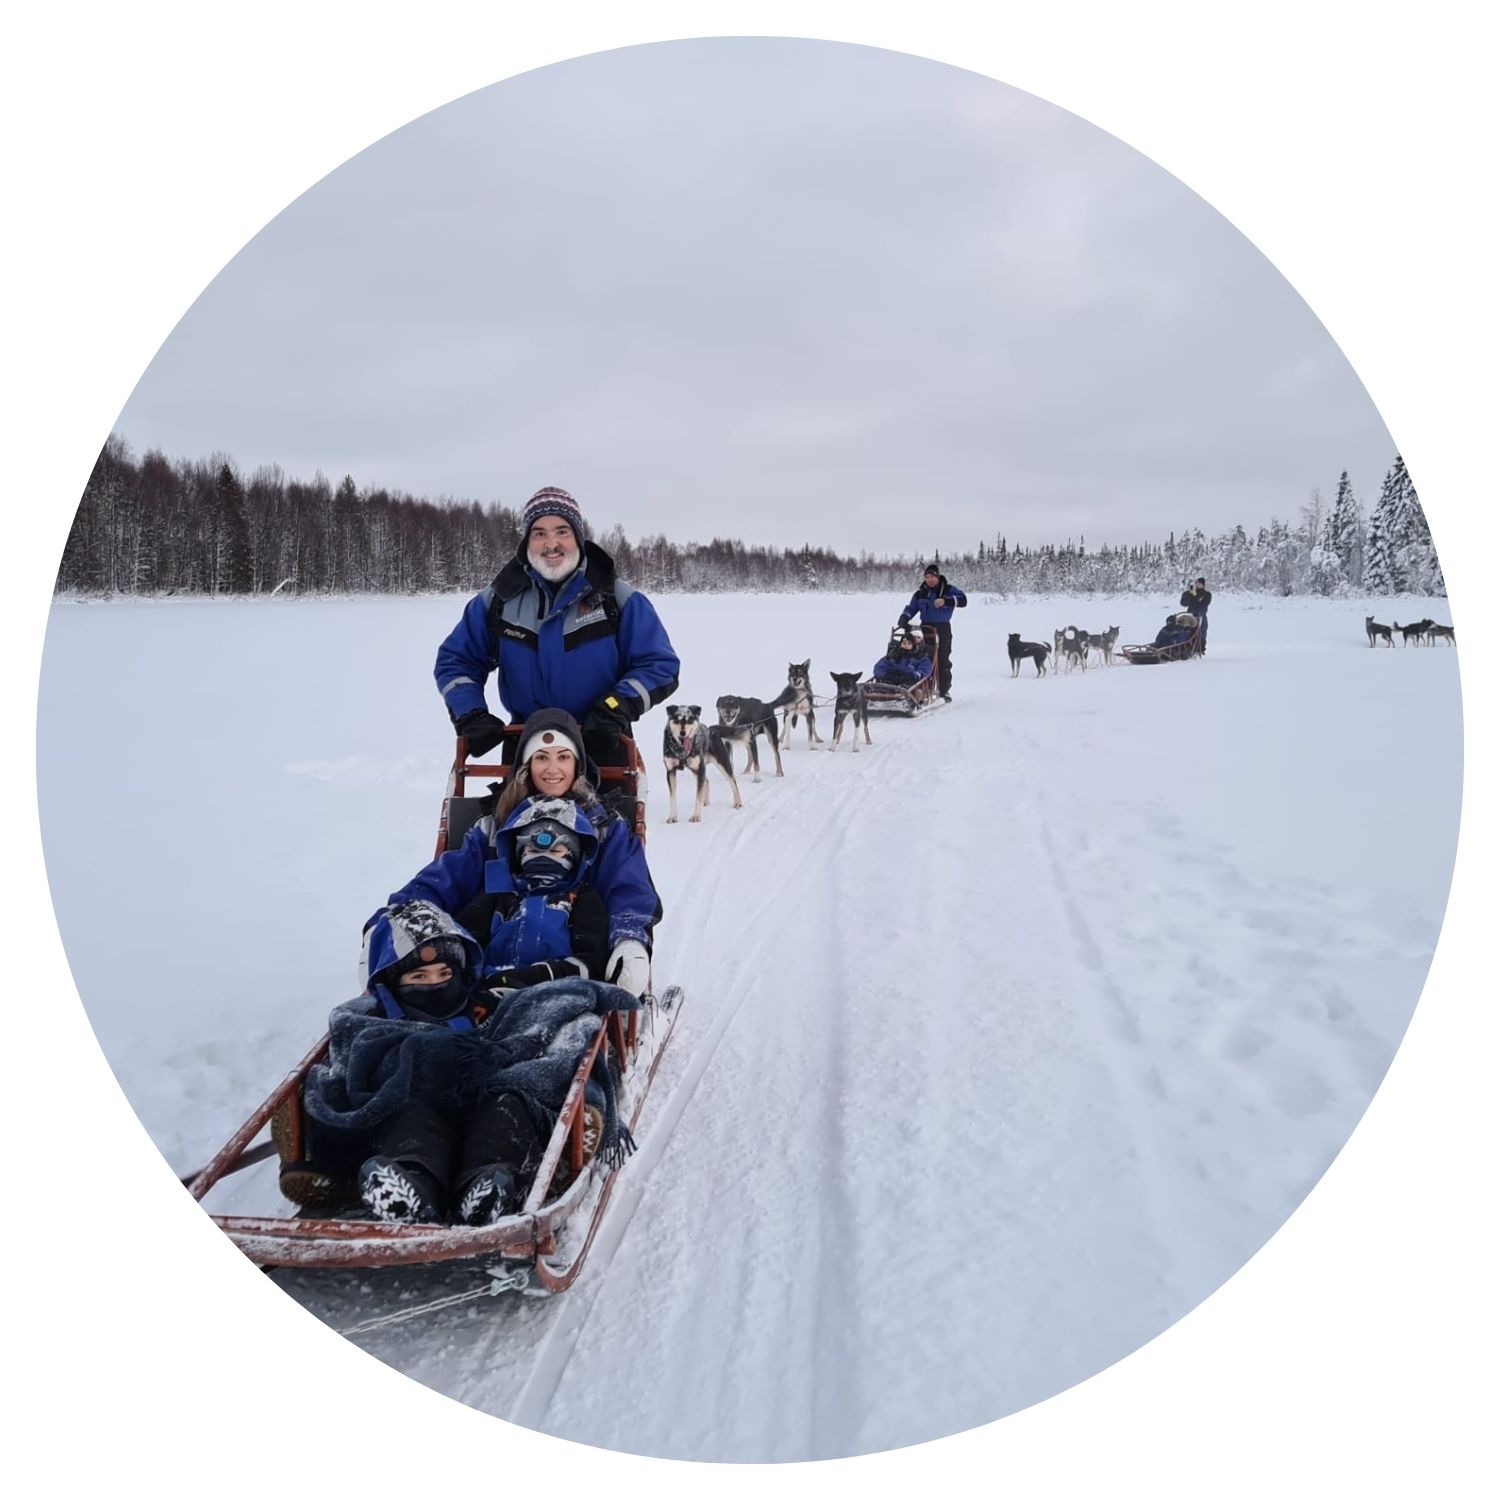 Une famille répartie dans plusieurs petits traîneaux traverse une montagne enneigée en Finlande, offrant une expérience hivernale inoubliable.